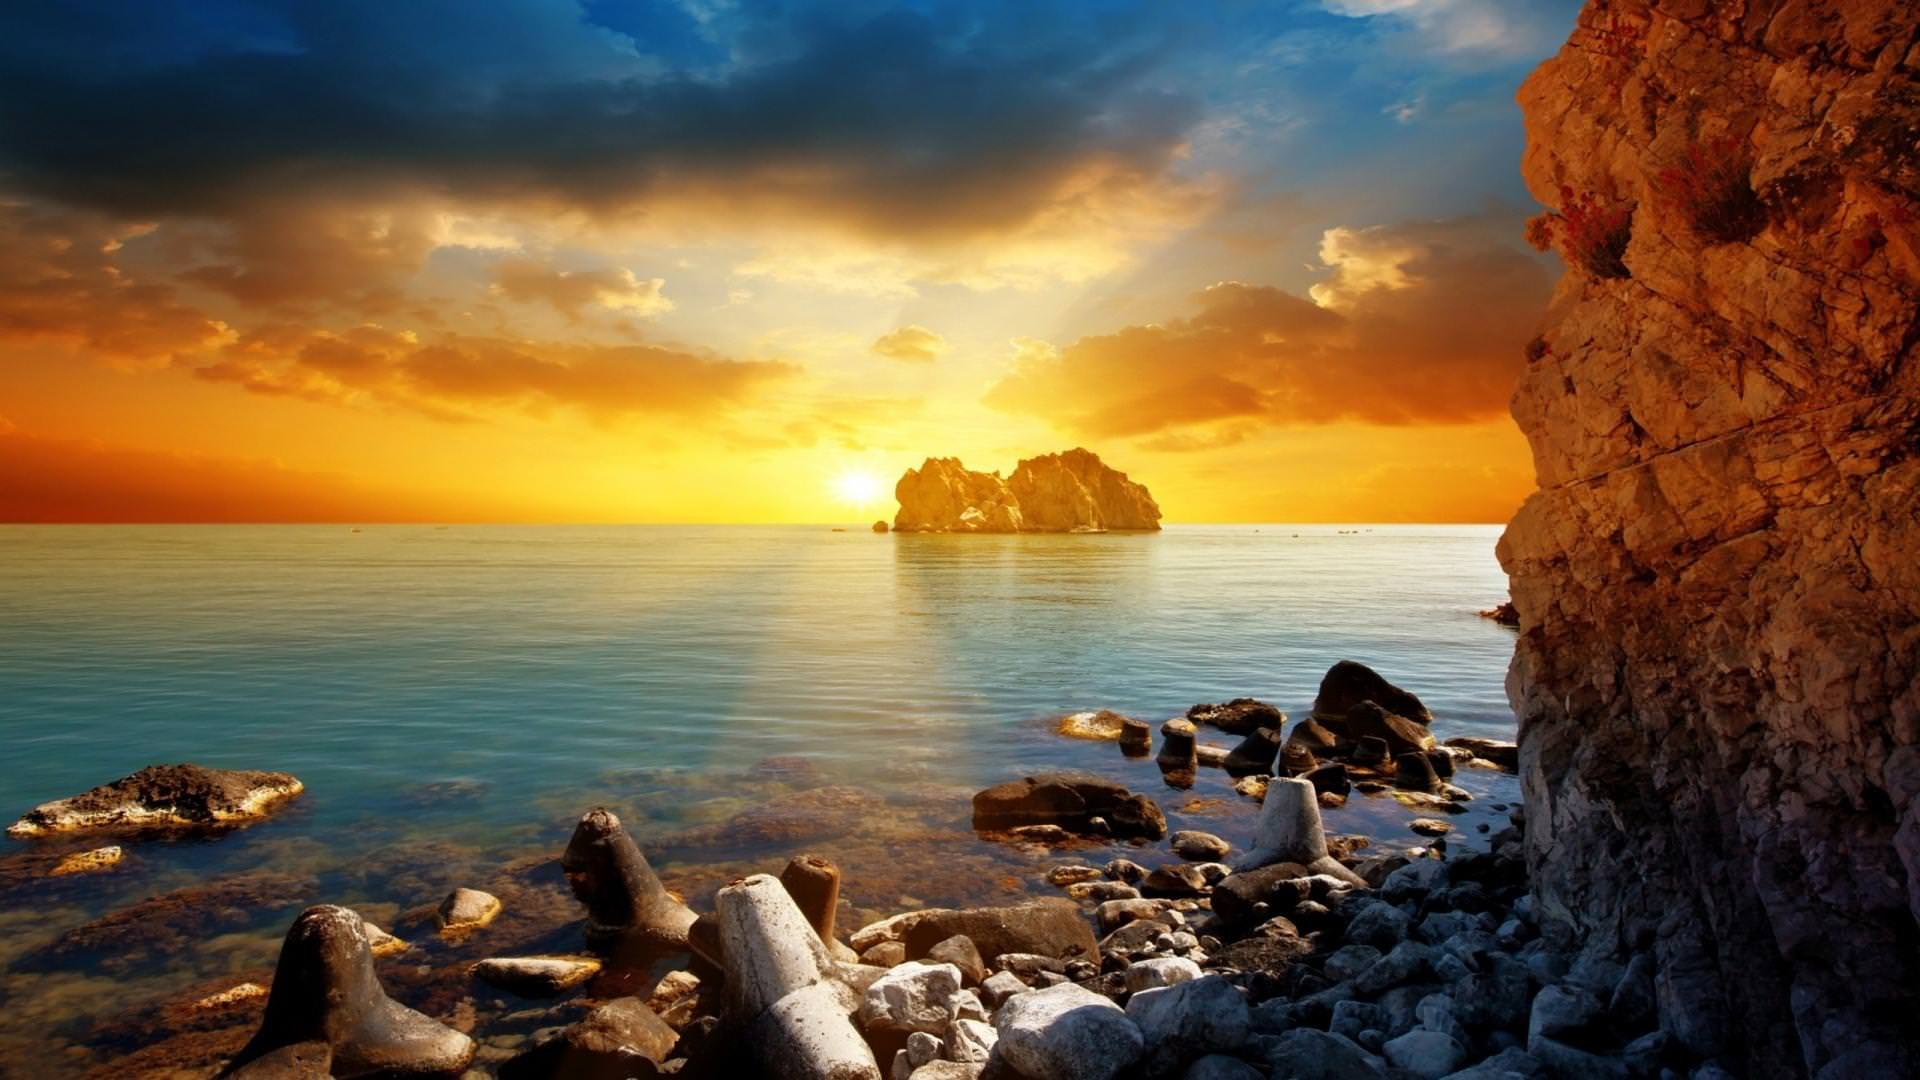 10+ Best Beach Sunset Desktop Wallpapers|FreeCreatives